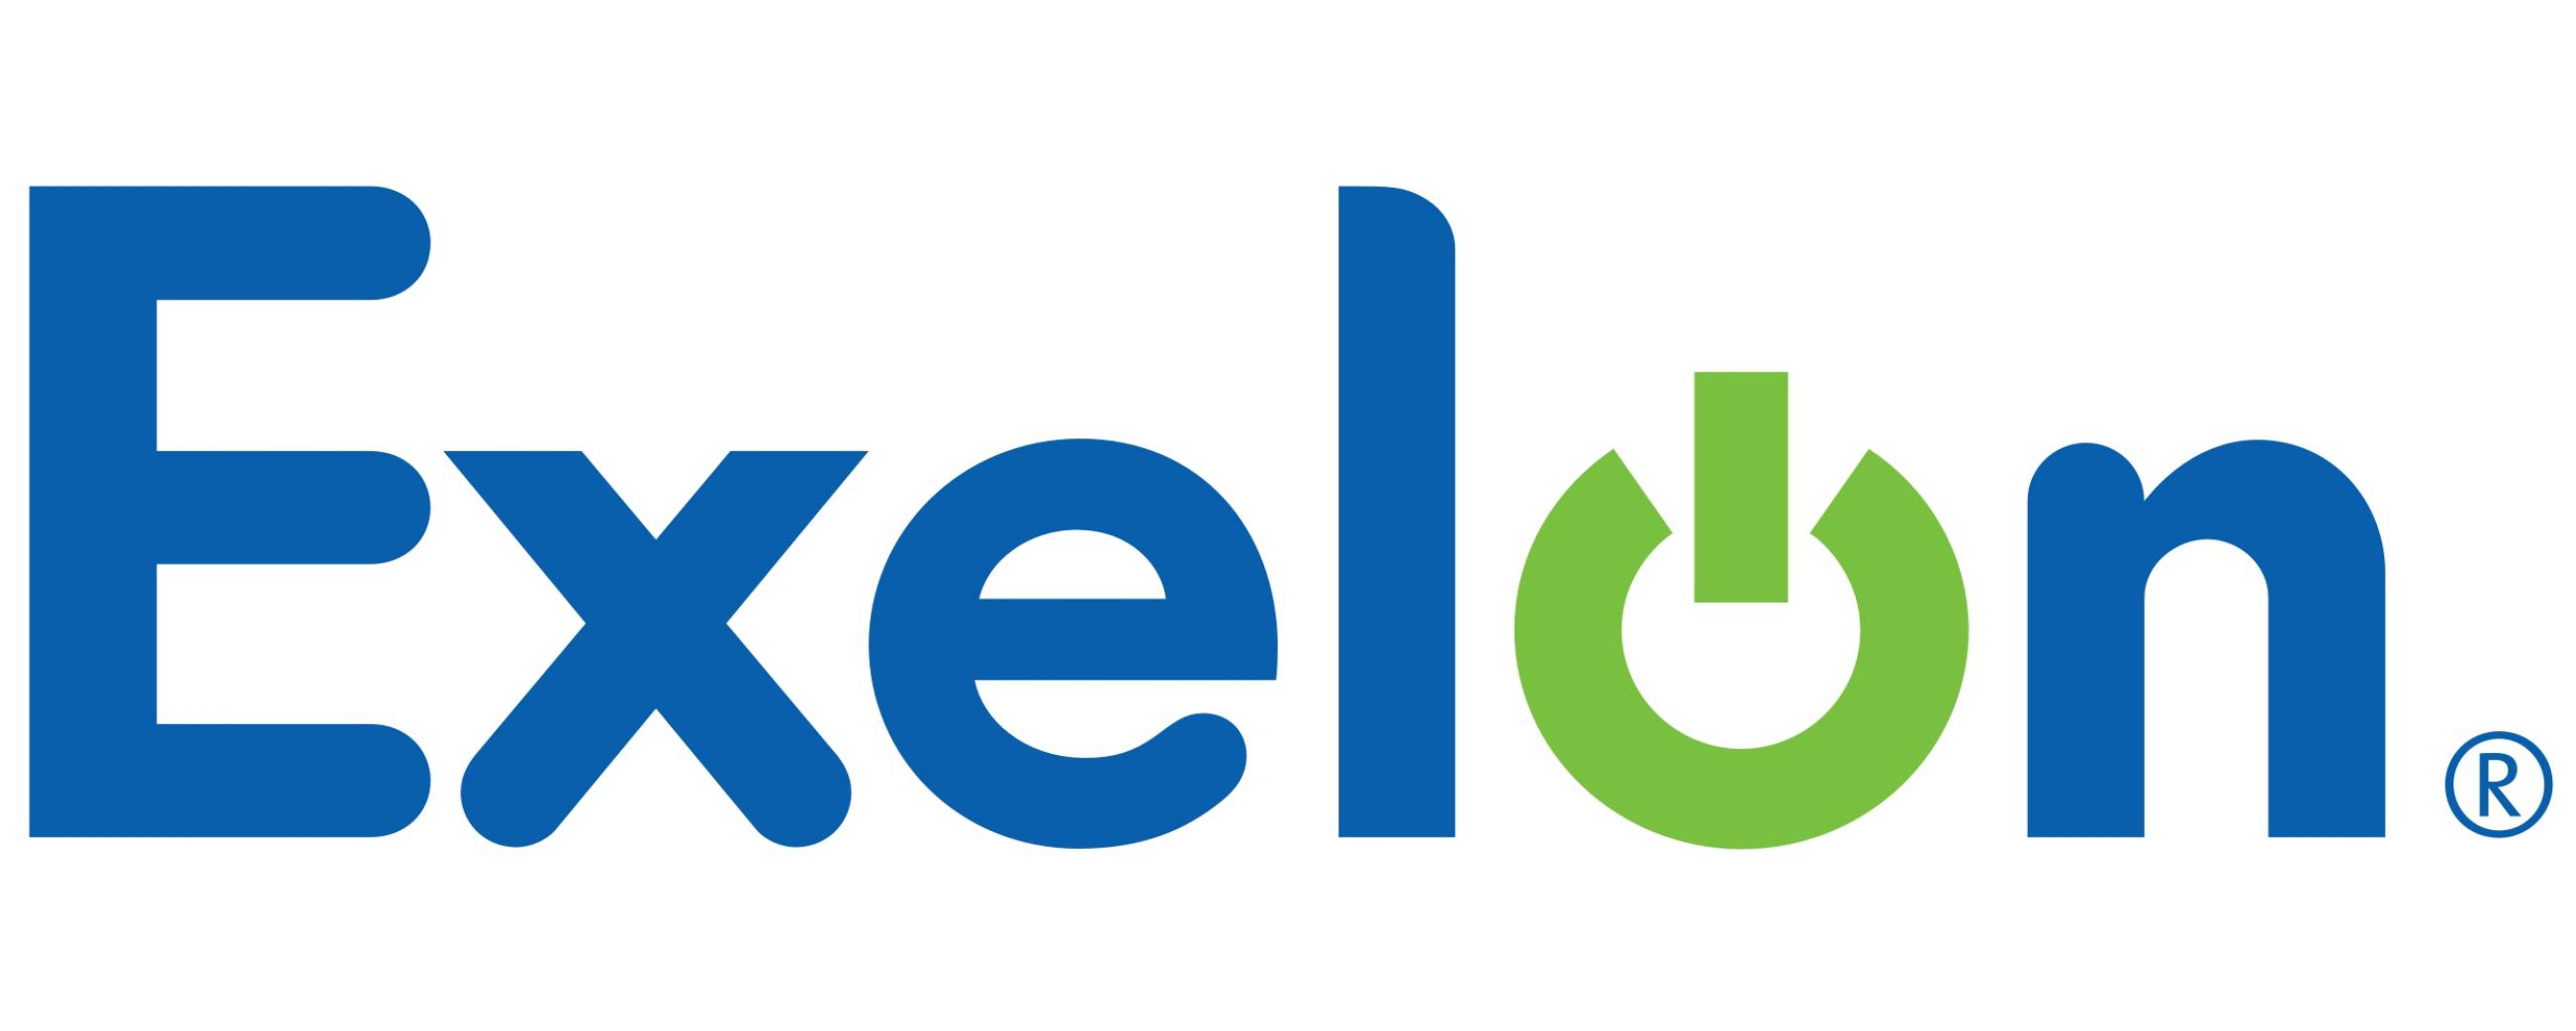 Exelon Logo [EPS-PDF Files]